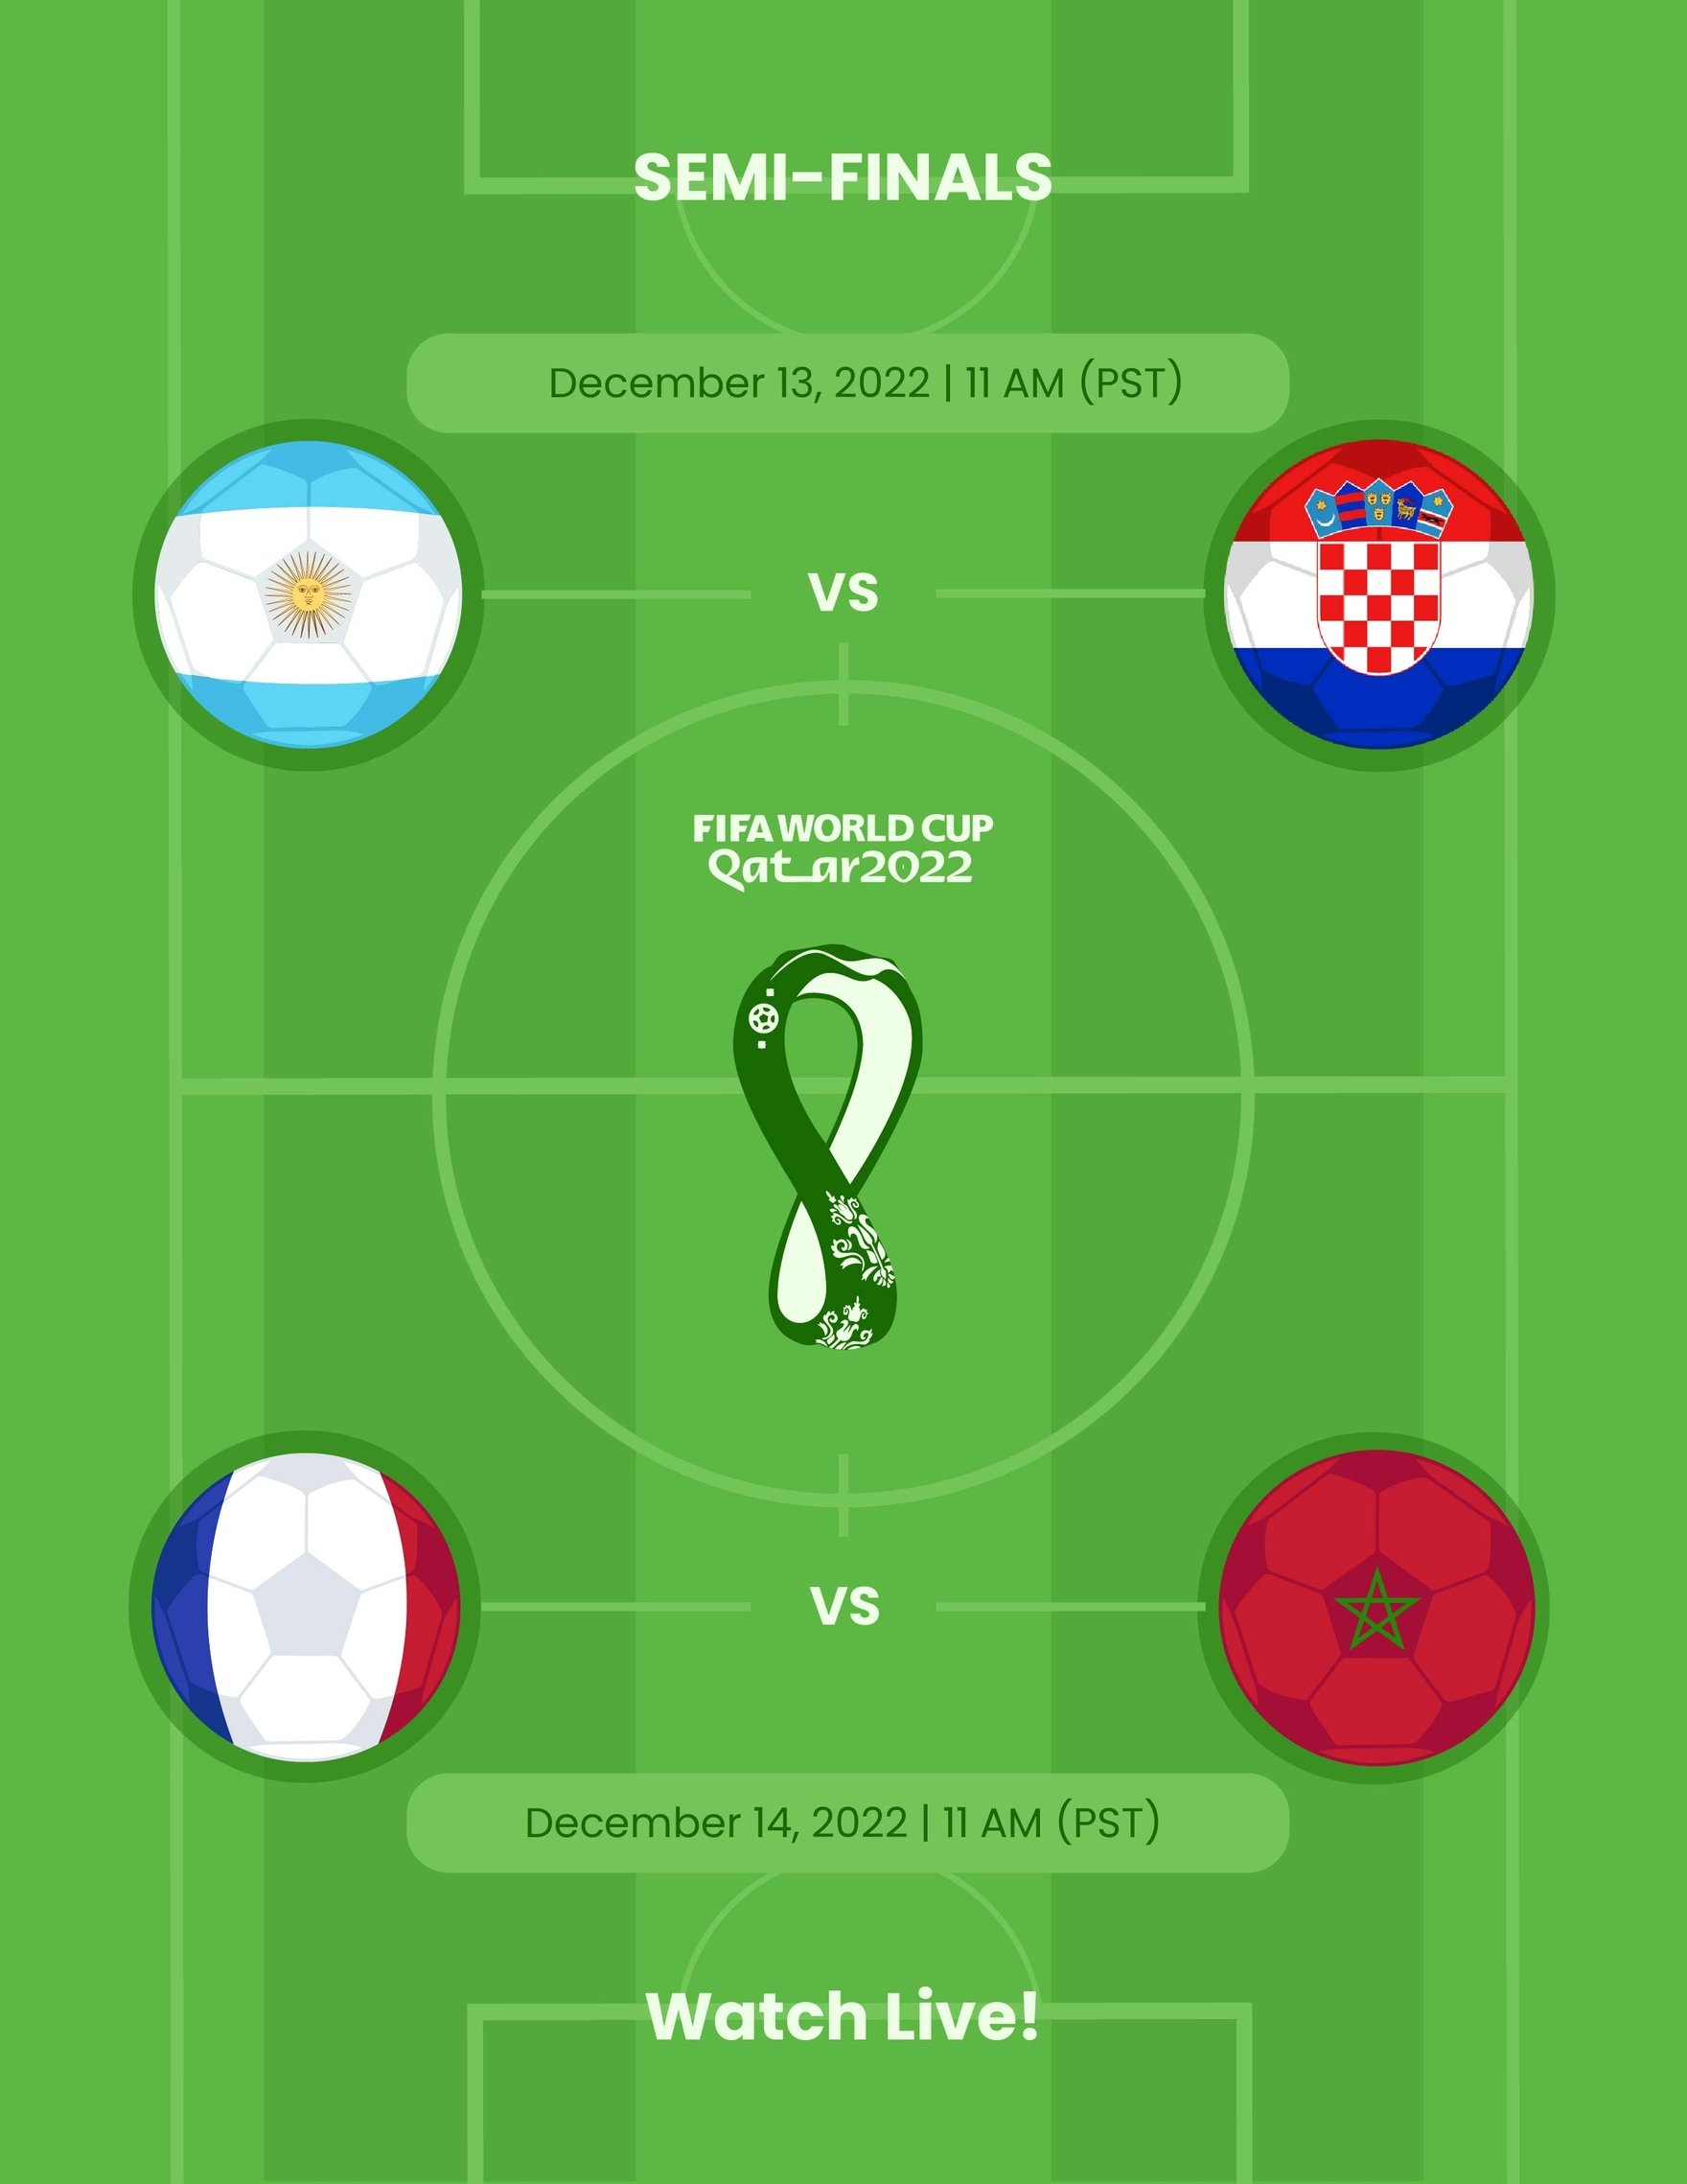 FIFA World Cup 2022 Semi-Finals Flyer